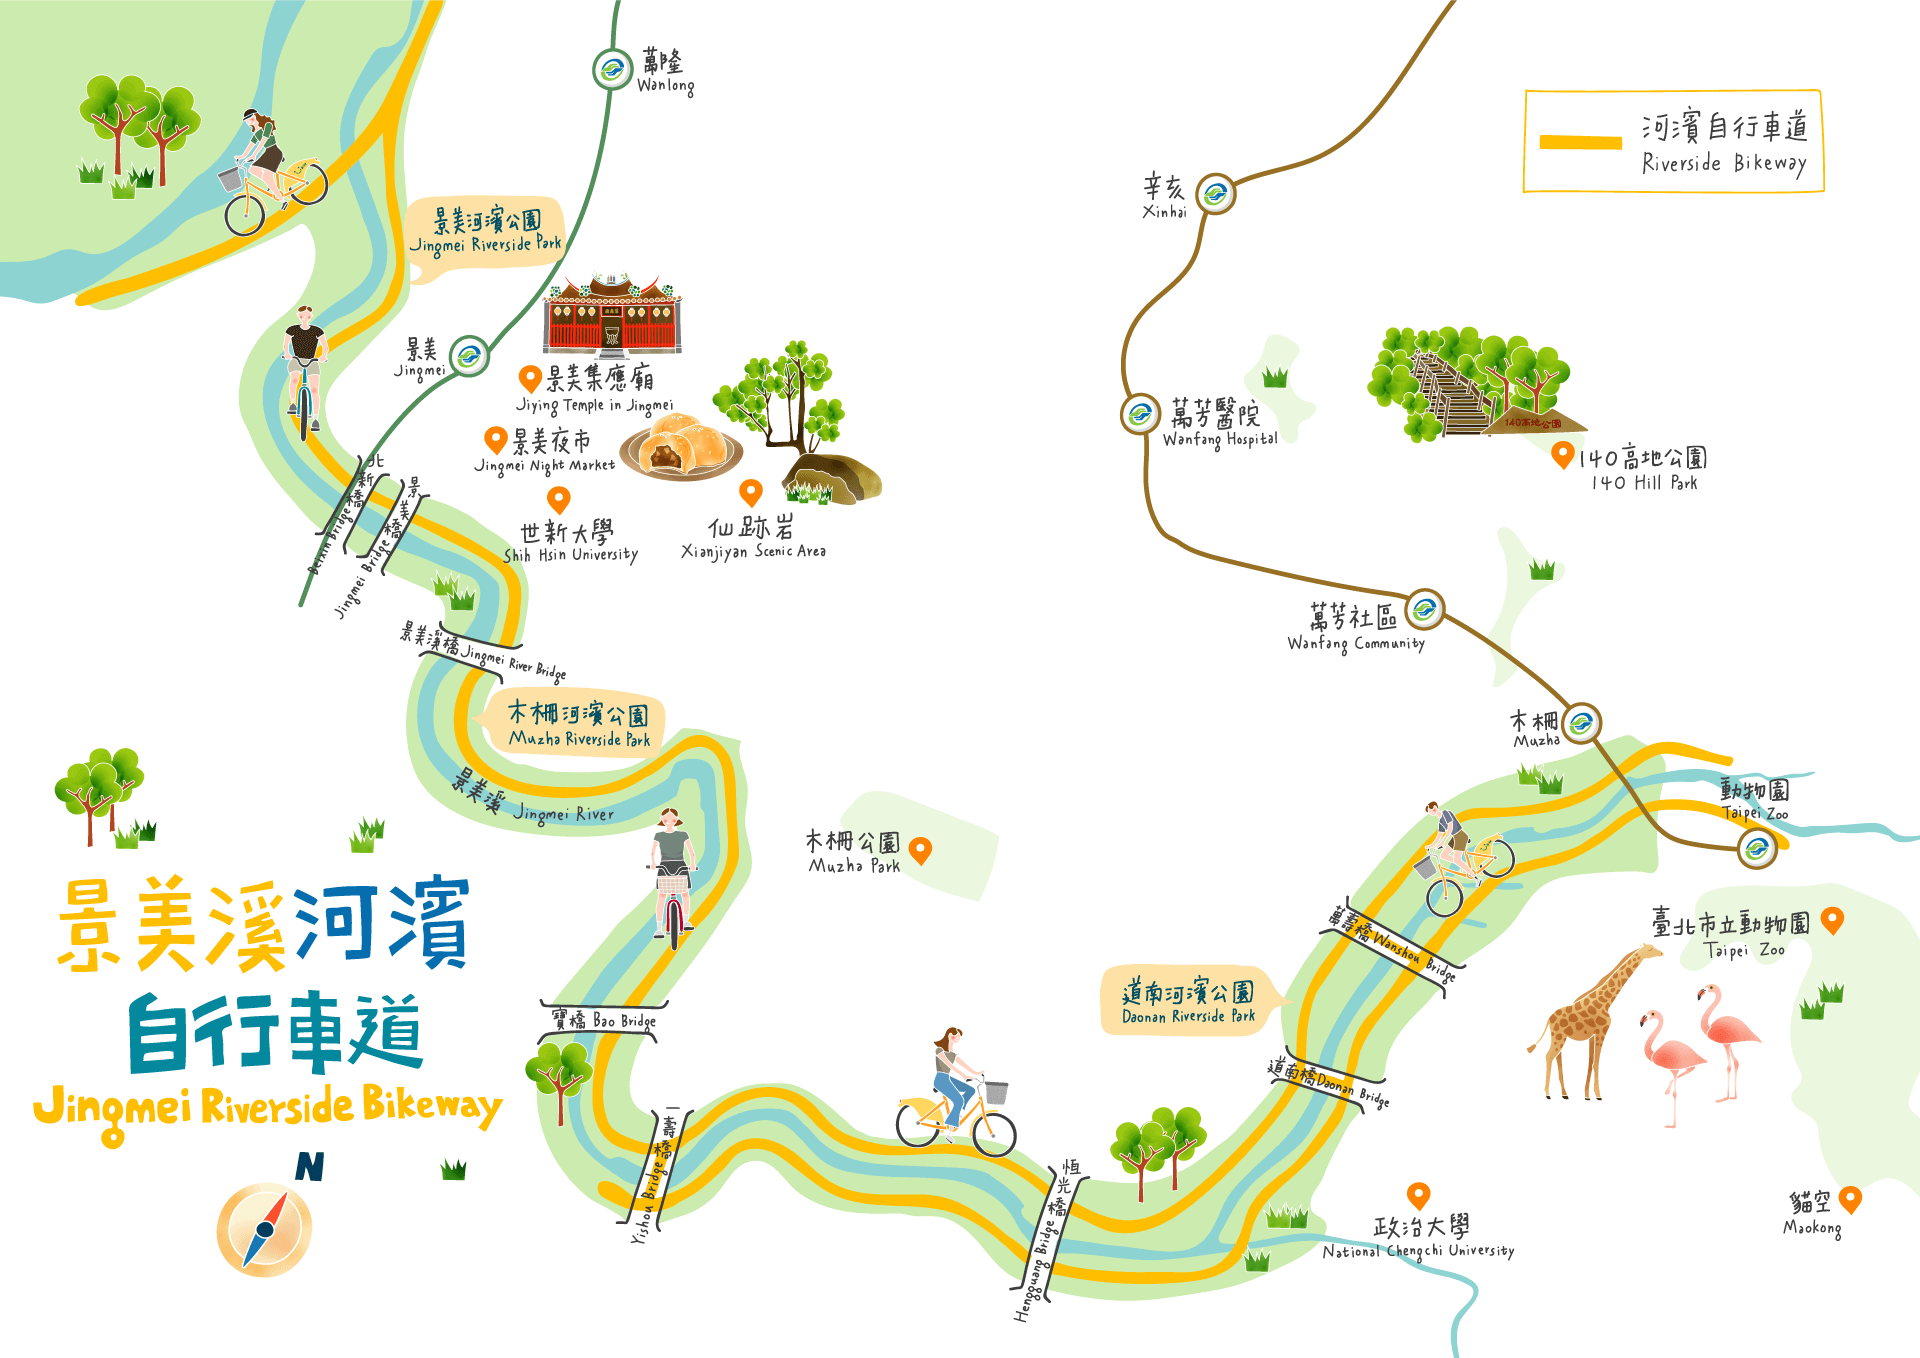 景美溪河濱自行車道路線圖